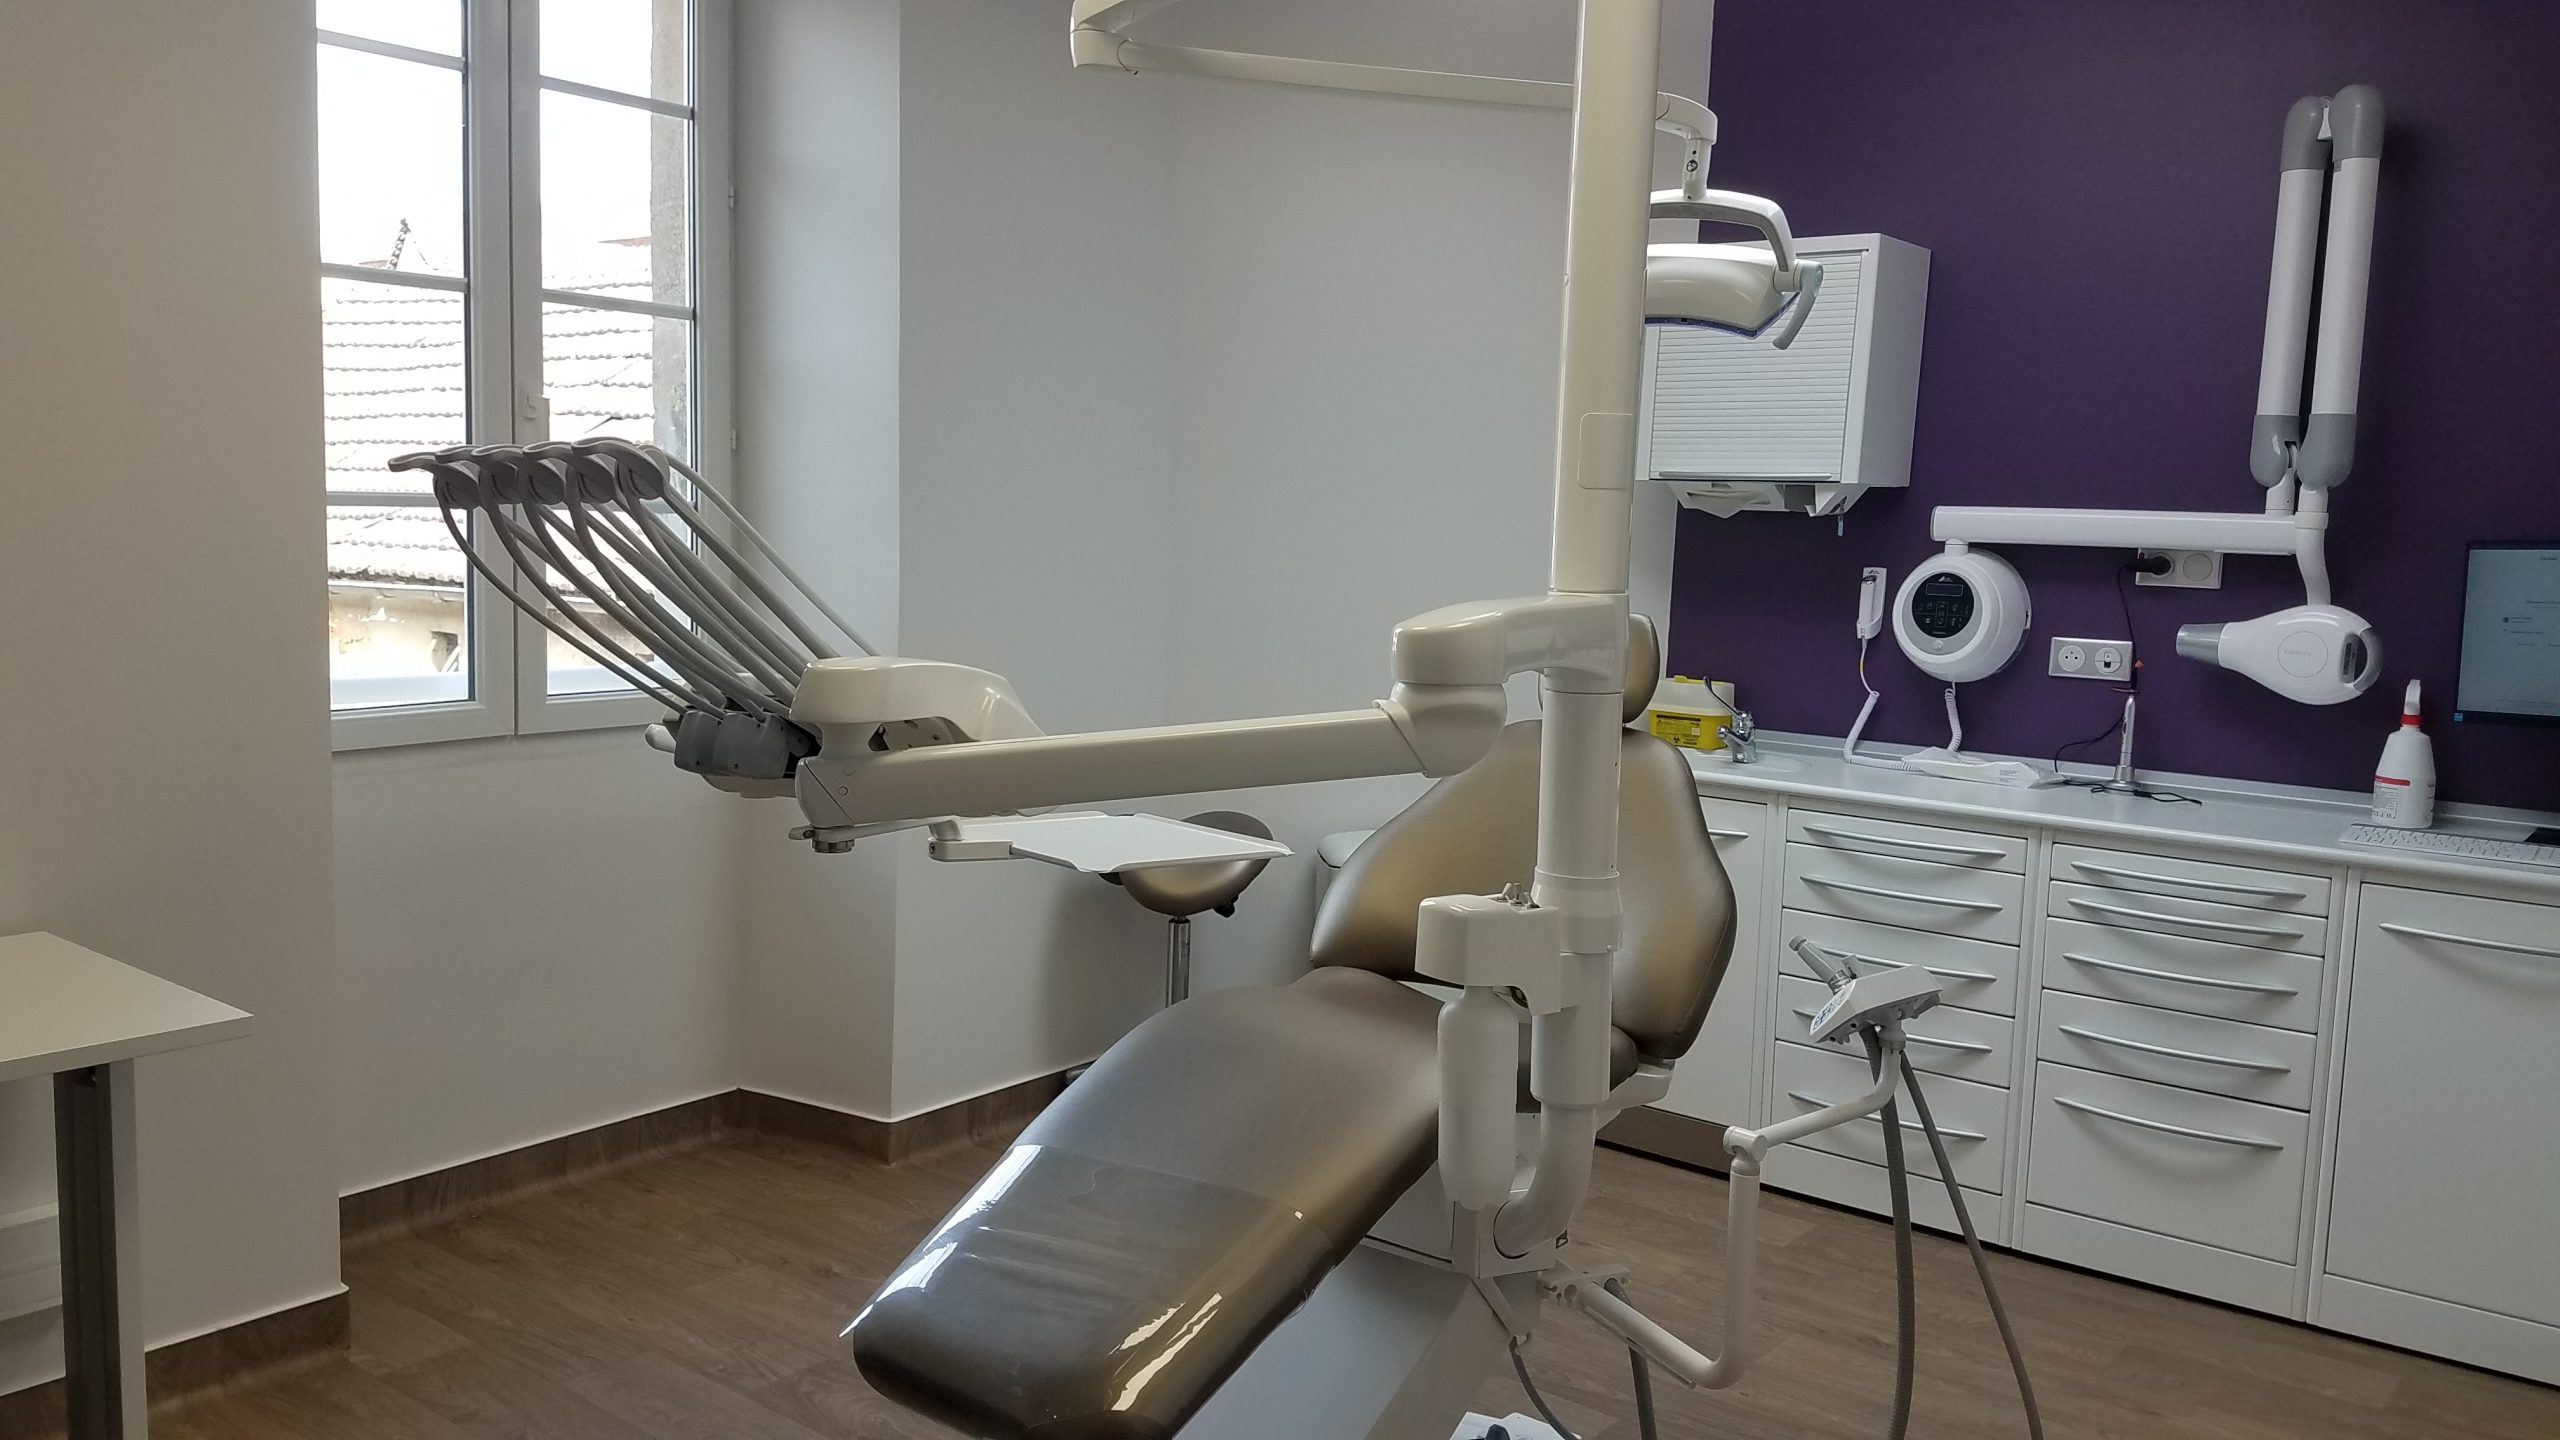 Une des salles de soin du centre de santé dentaire, équipée de la radio panoramique et du'un siège à mémoire de forme